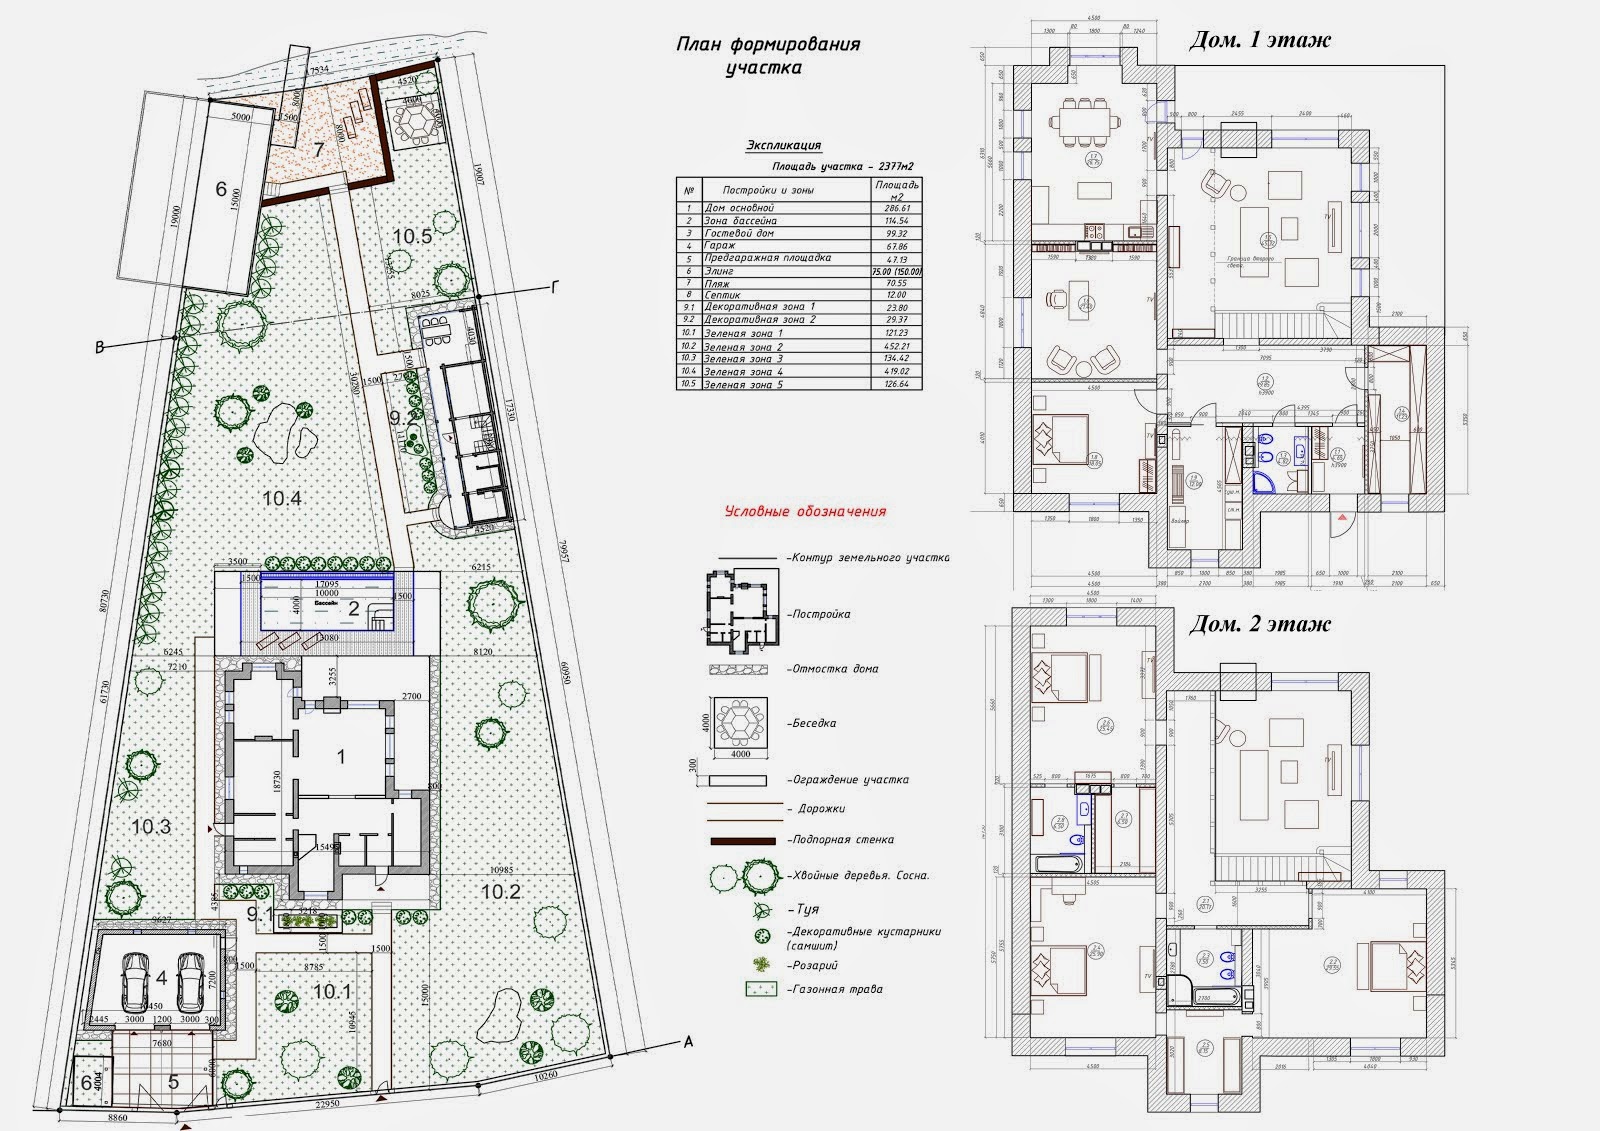 Формирование участка и проектирование жилого дома